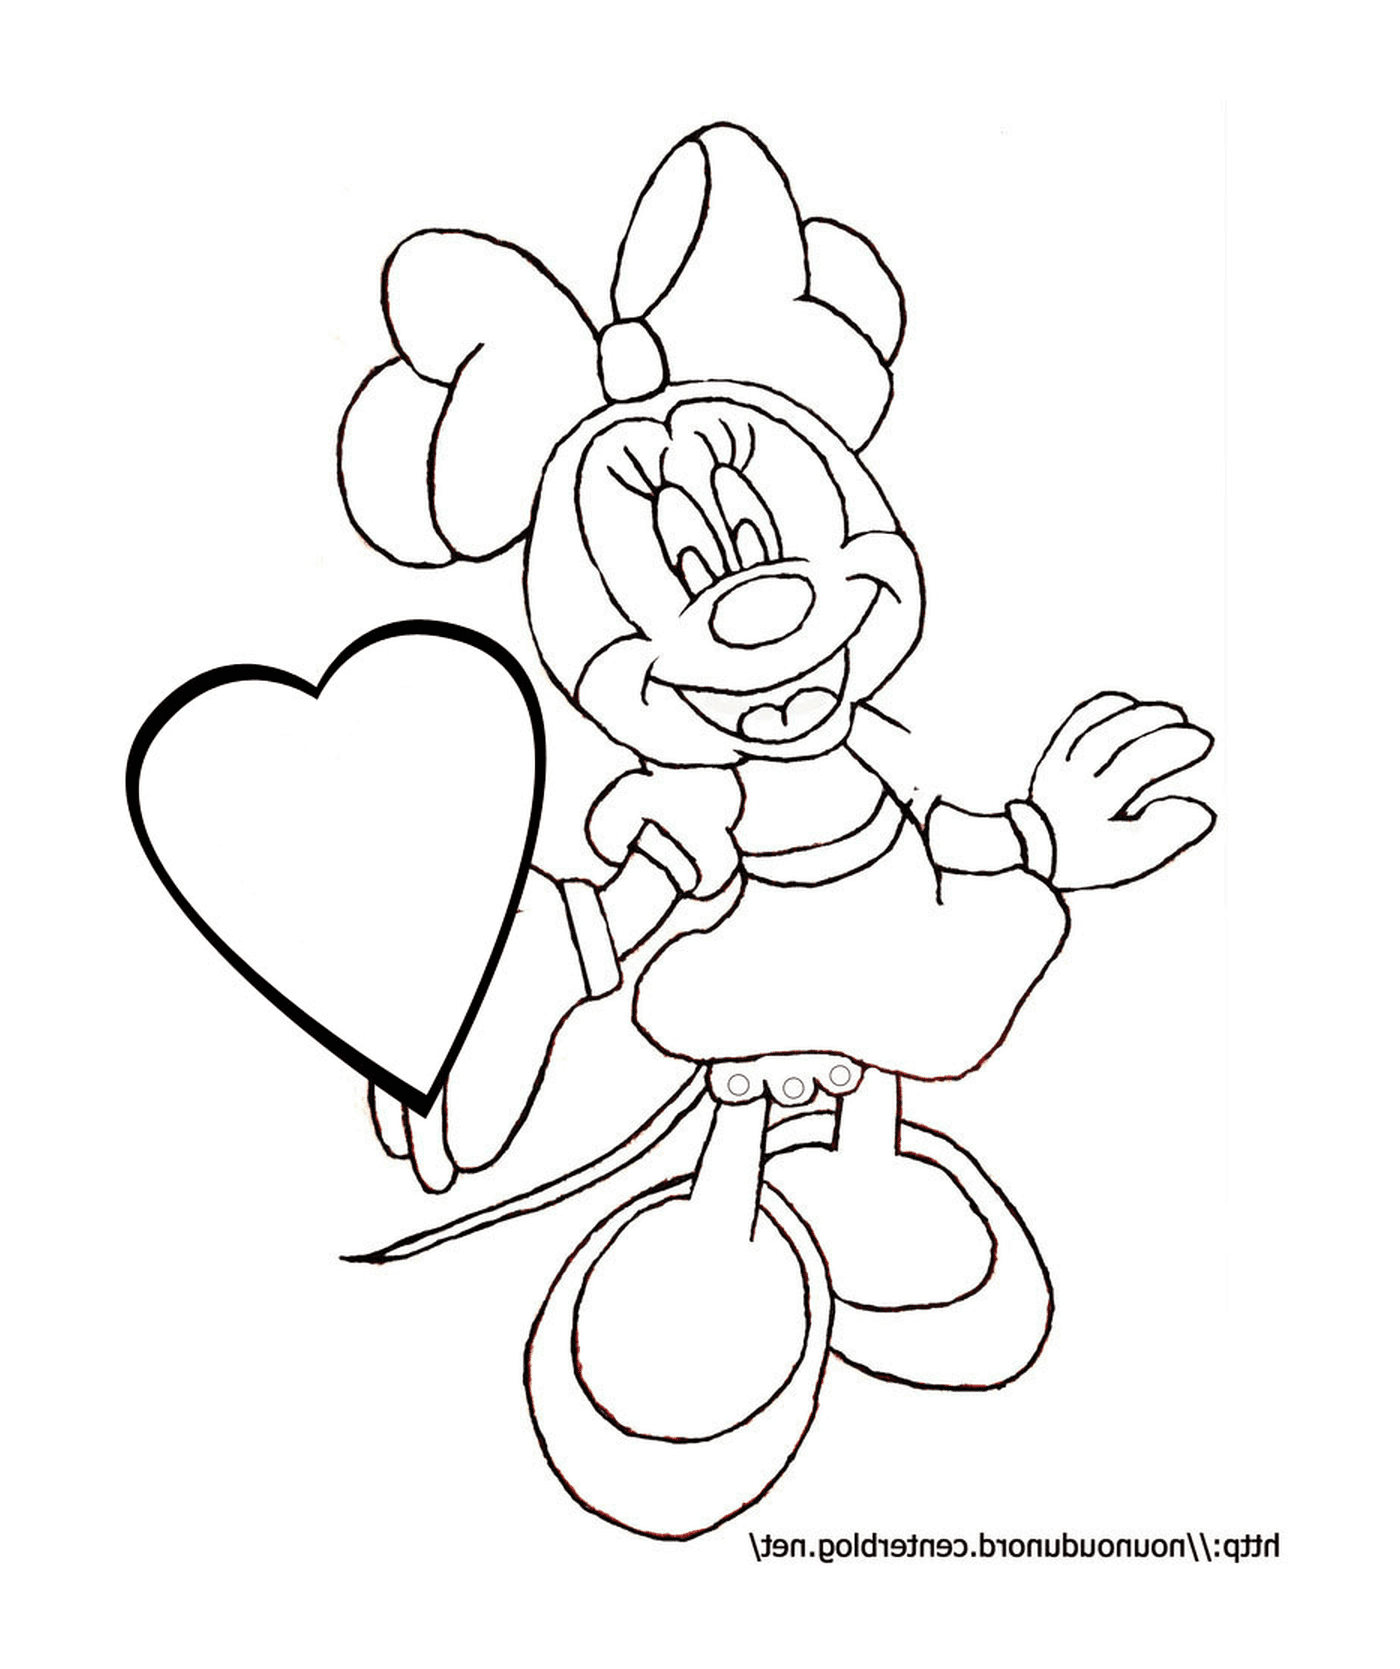  Минни Мышь с шариком в форме сердца 